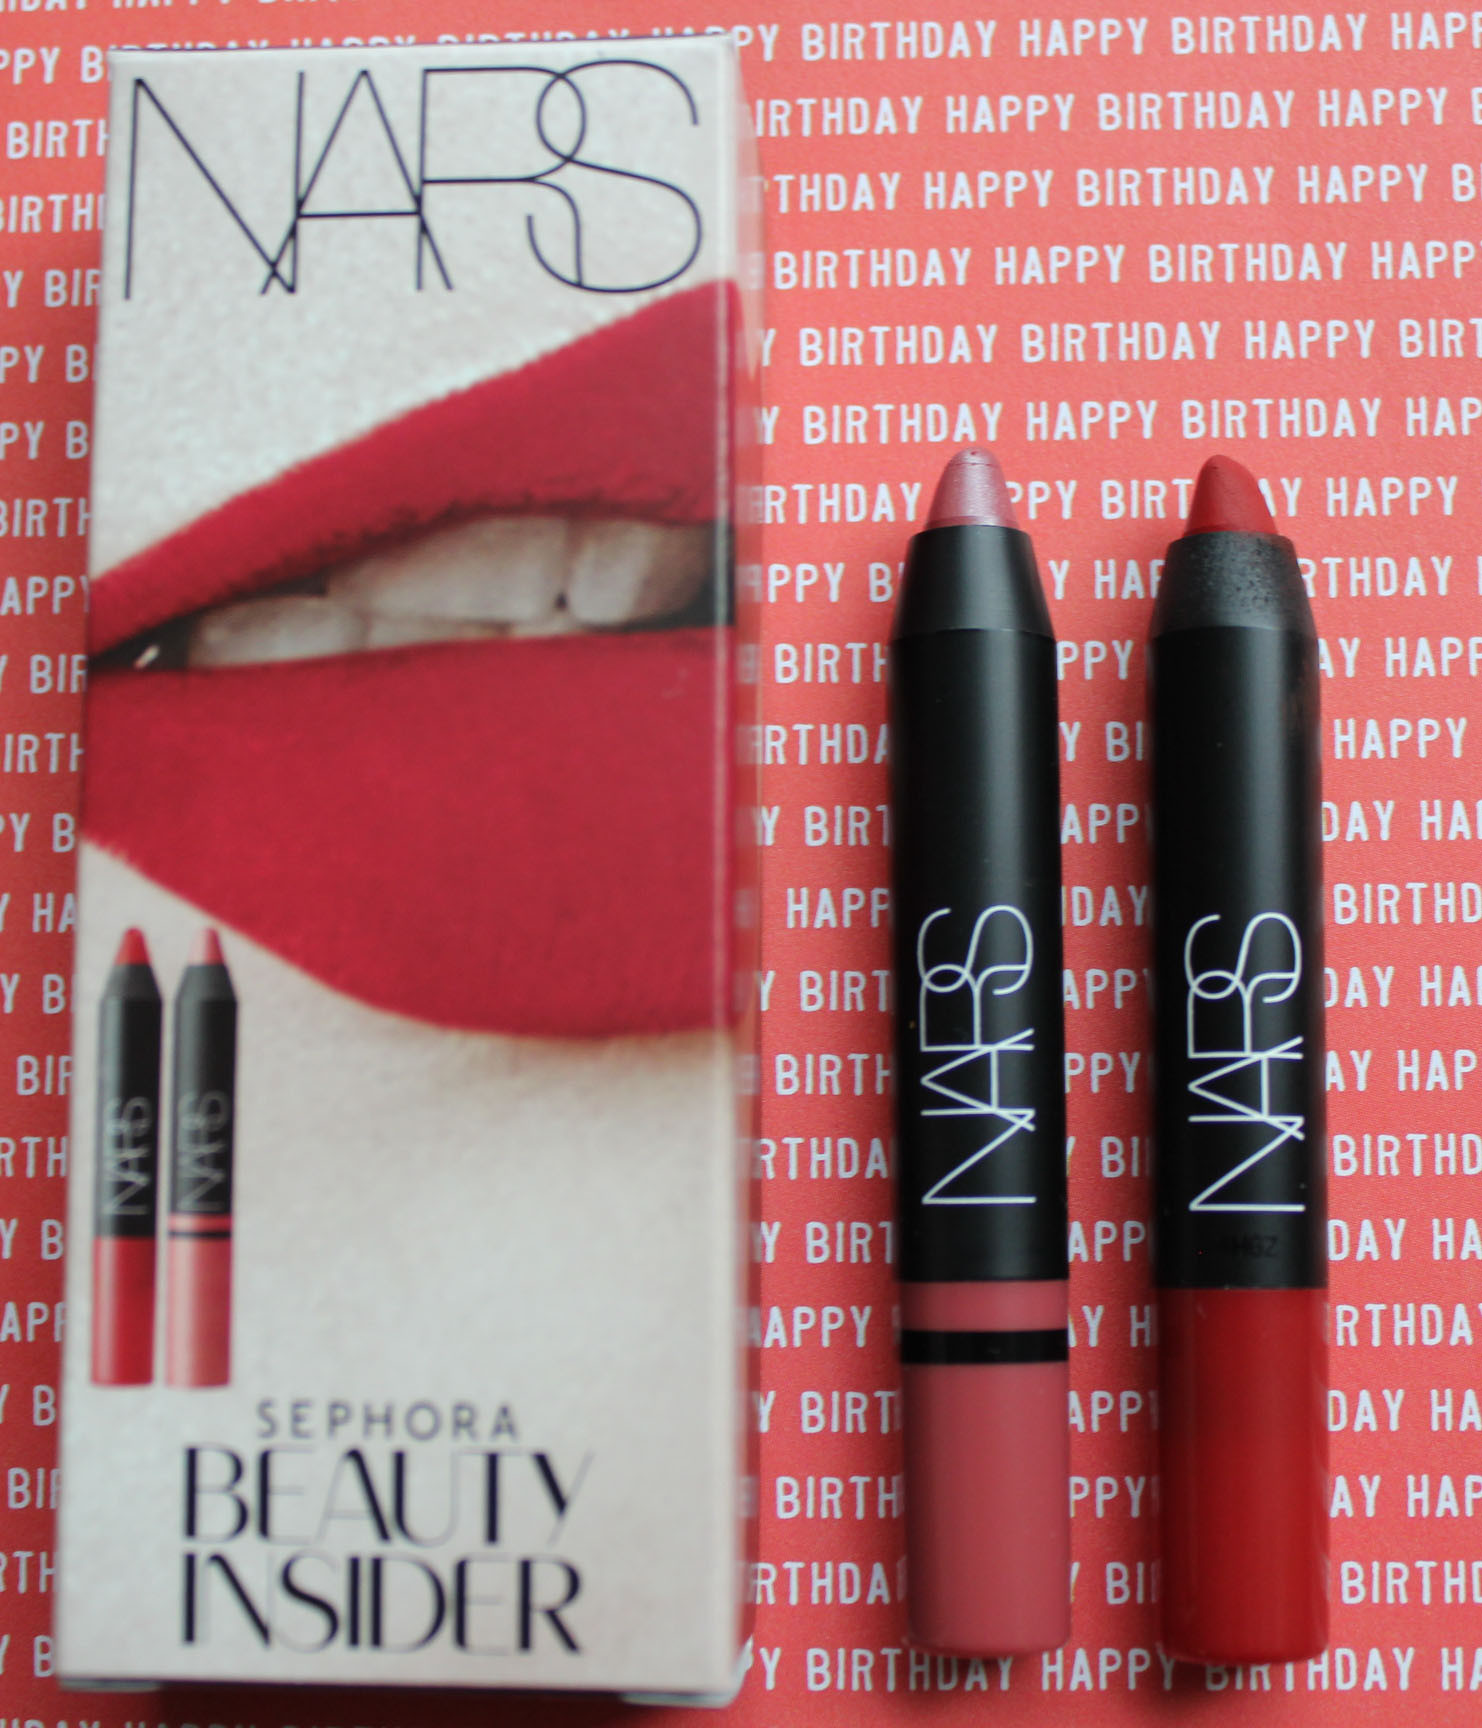 Birthday Gifts 2015
 2015 Sephora Beauty Insider Birthday Gift